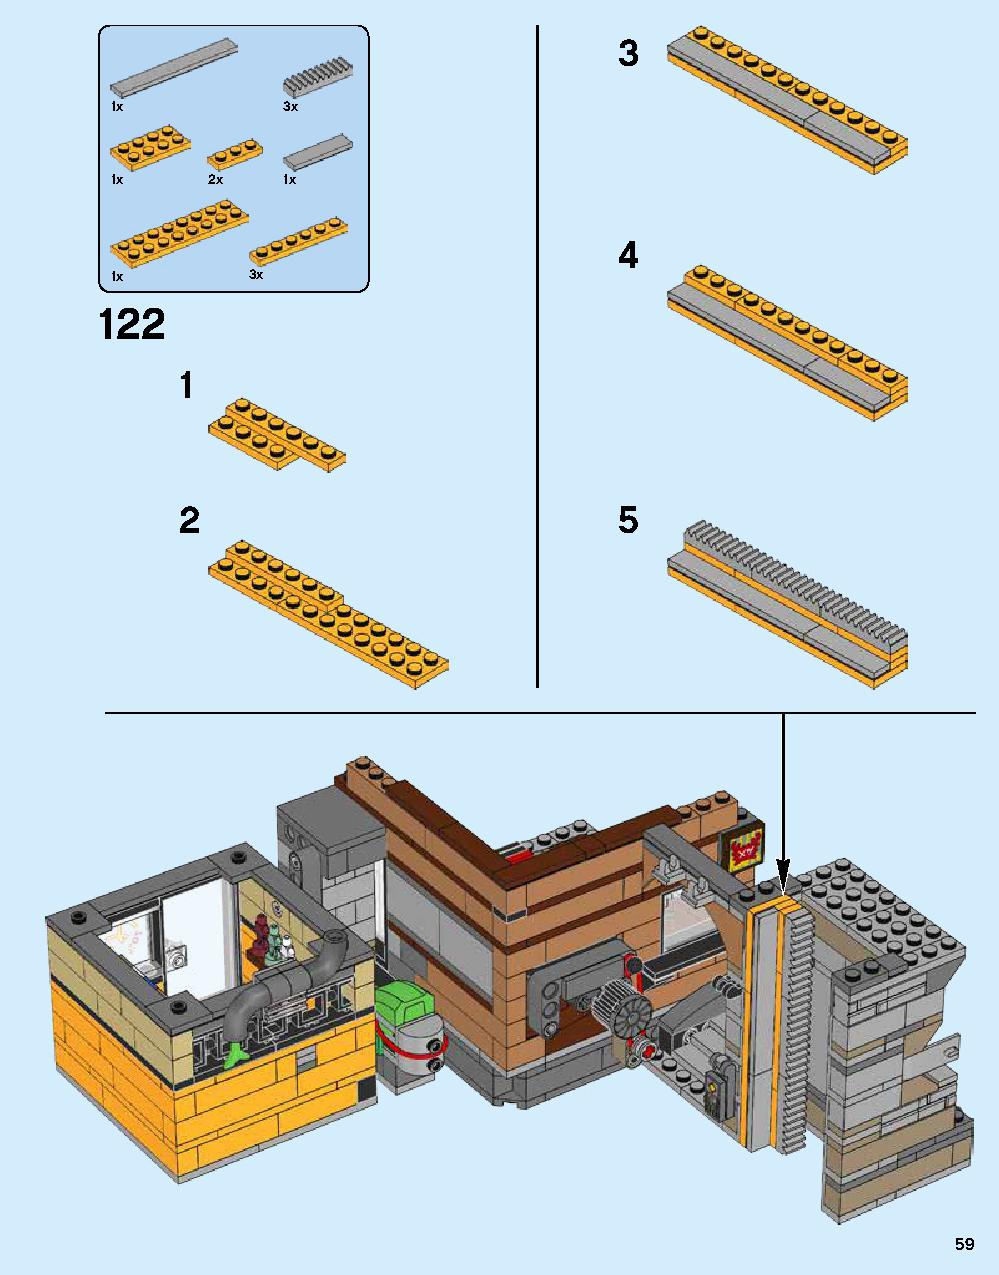 ニンジャゴー シティ 70620 レゴの商品情報 レゴの説明書・組立方法 59 page